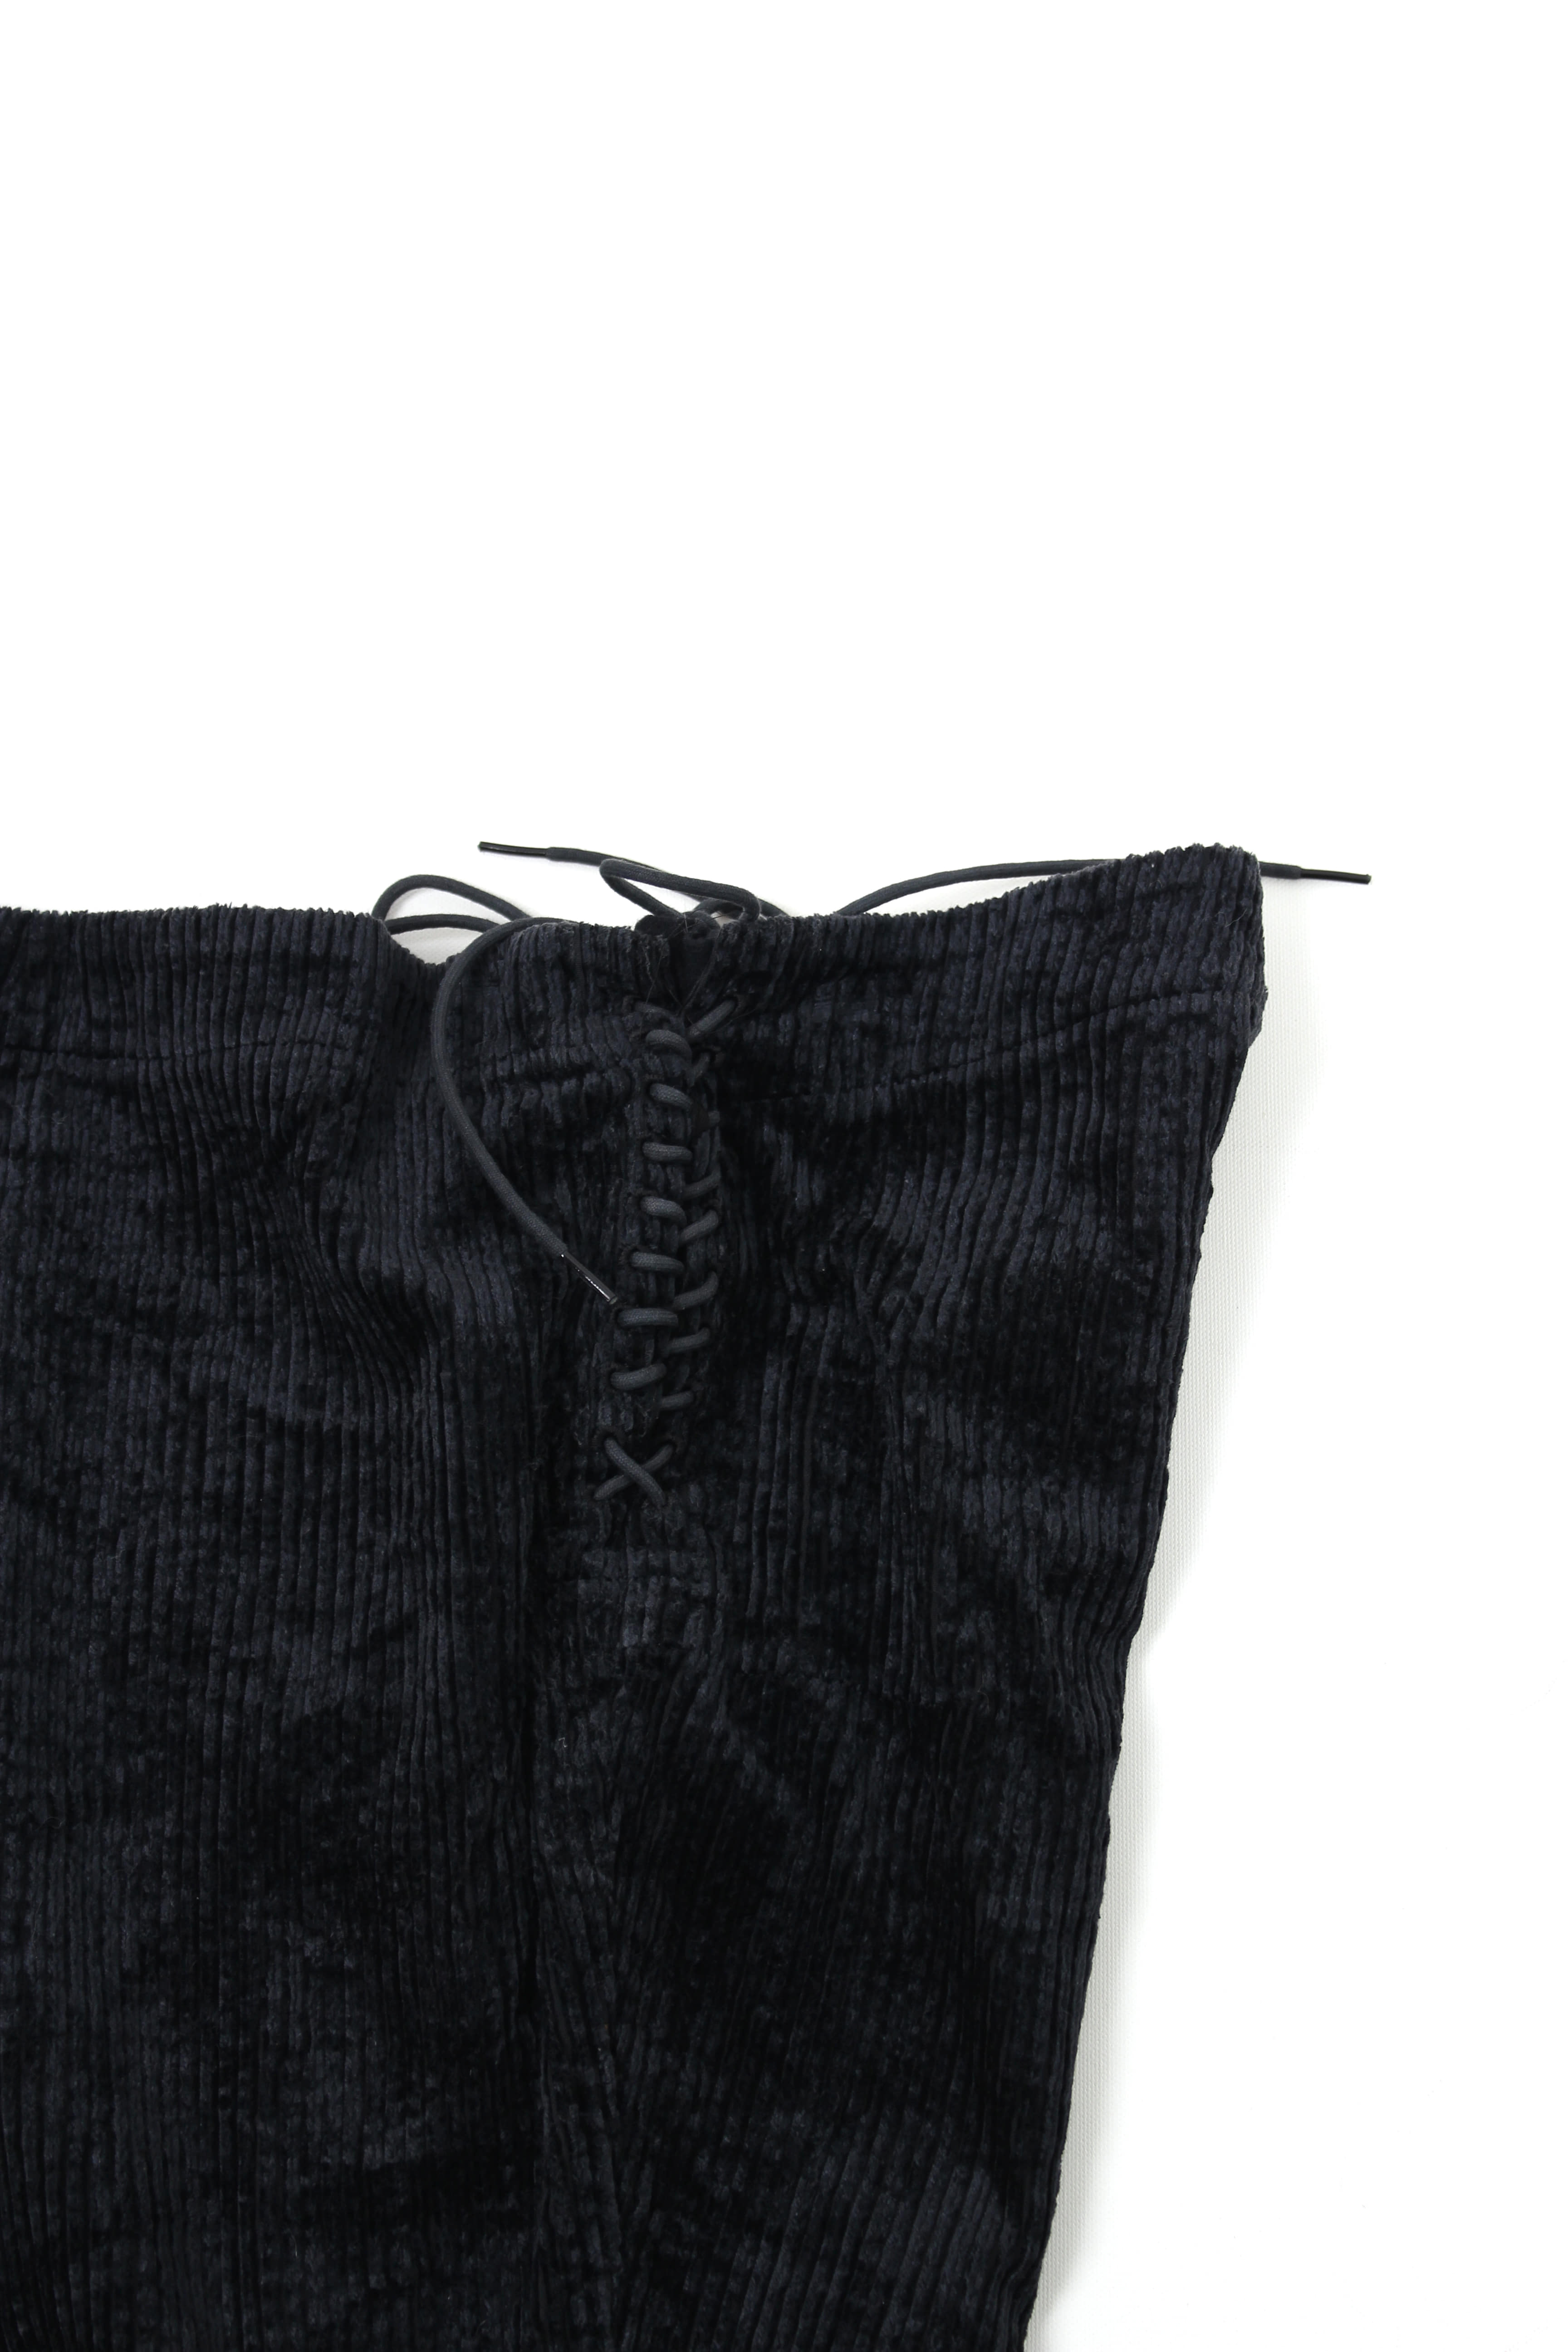 yohji yamamoto lace-up pants